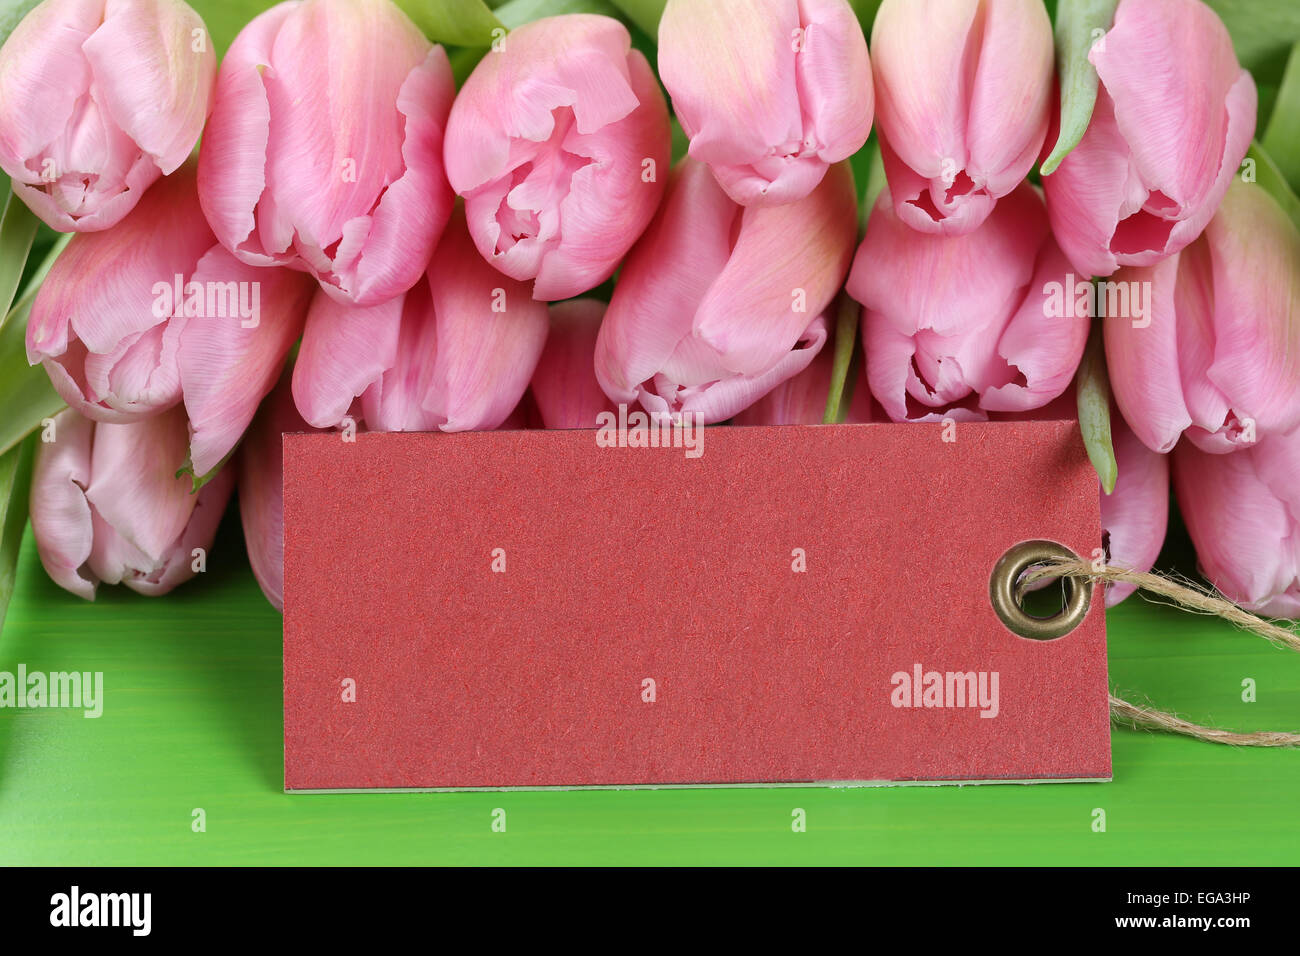 Tulipanes flores en la primavera, el cumpleaños o el día de la madre con la etiqueta vacía y copyspace para su propio texto Foto de stock